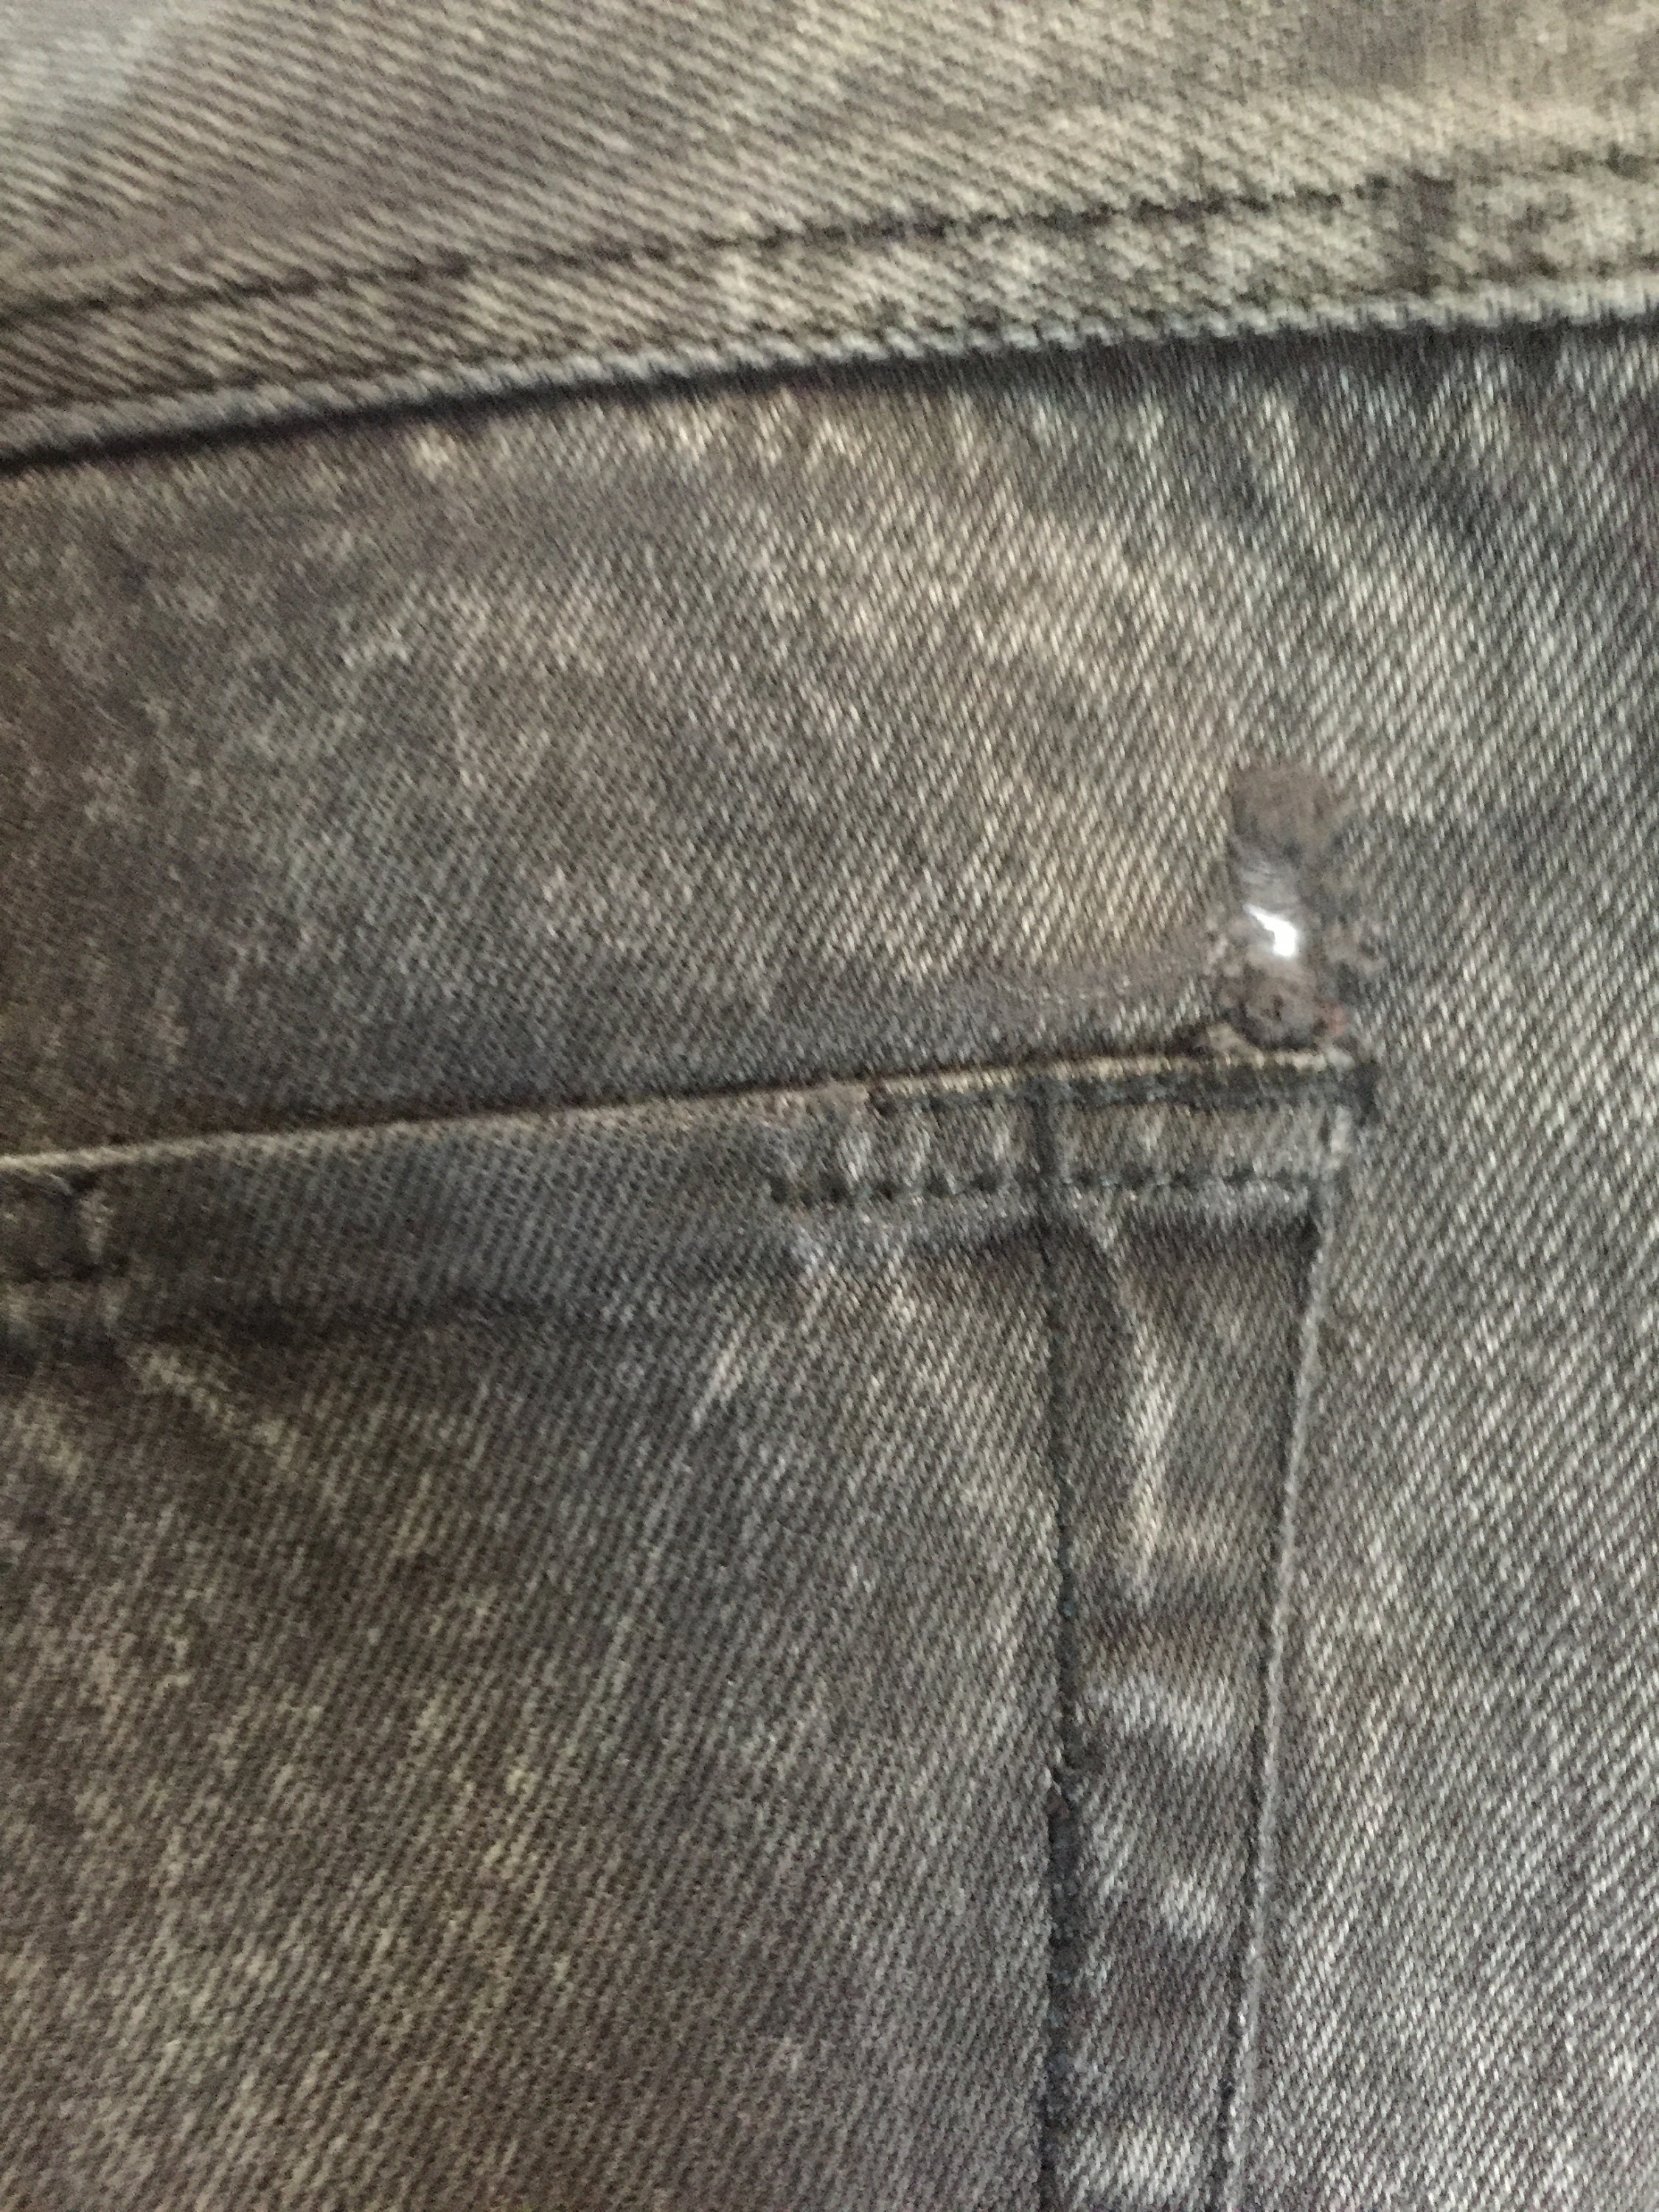 Vintage P.S. Gitano Black Stone Washed Acid Washed Denim Jeans - Etsy